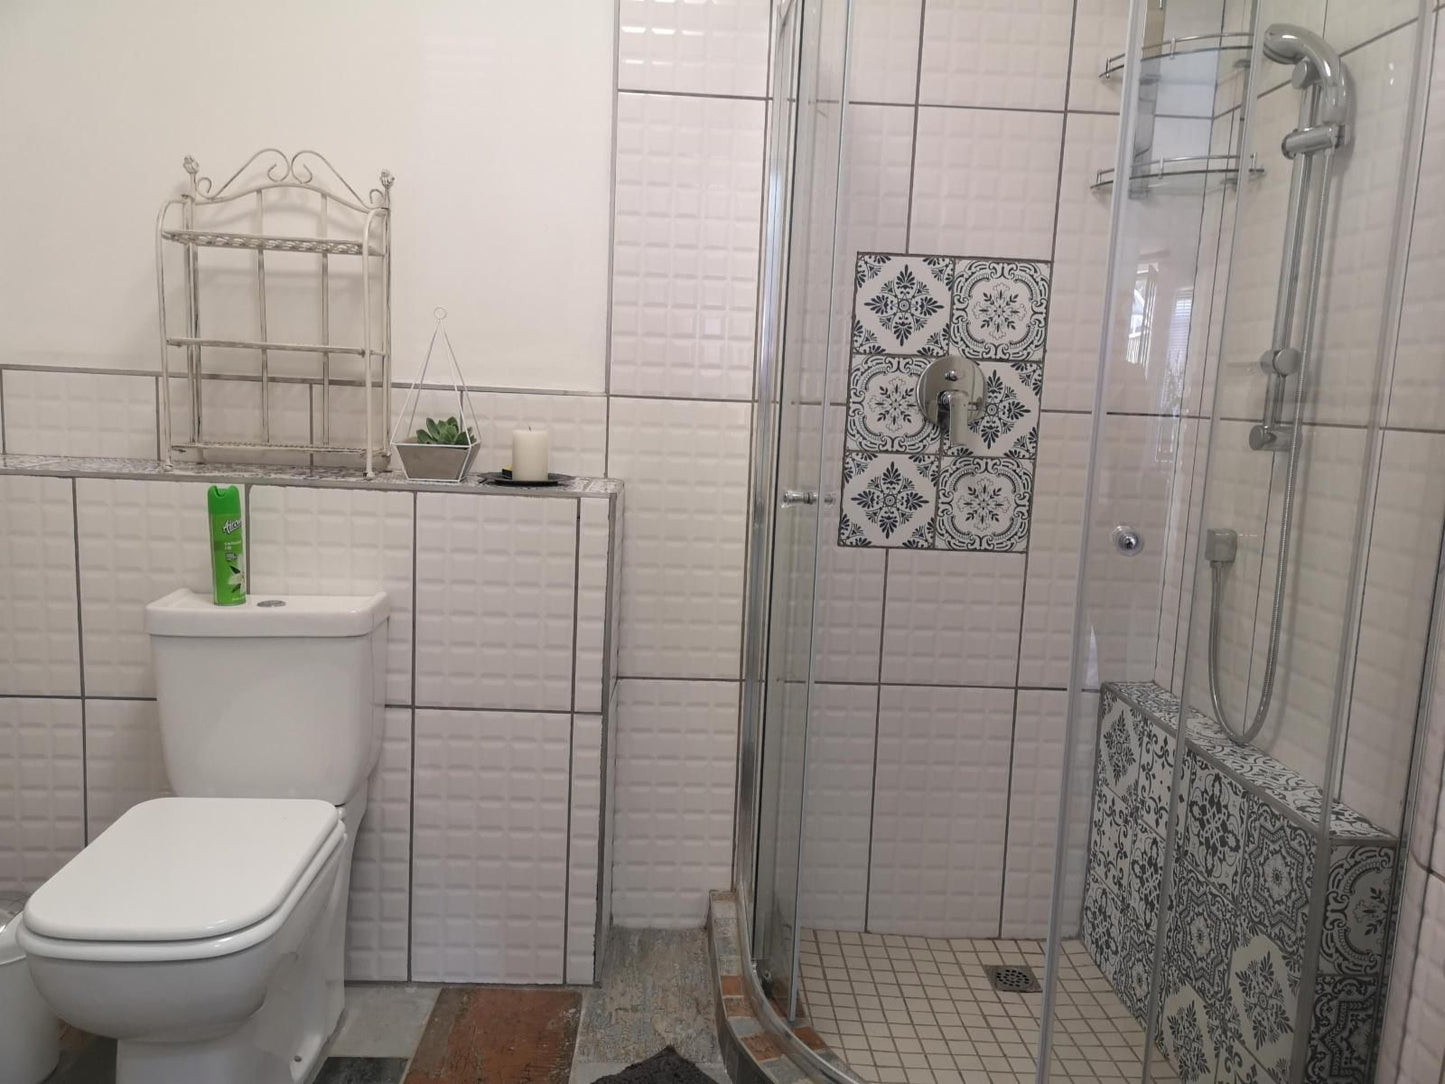 Inbloem Dan Pienaar Bloemfontein Free State South Africa Unsaturated, Bathroom